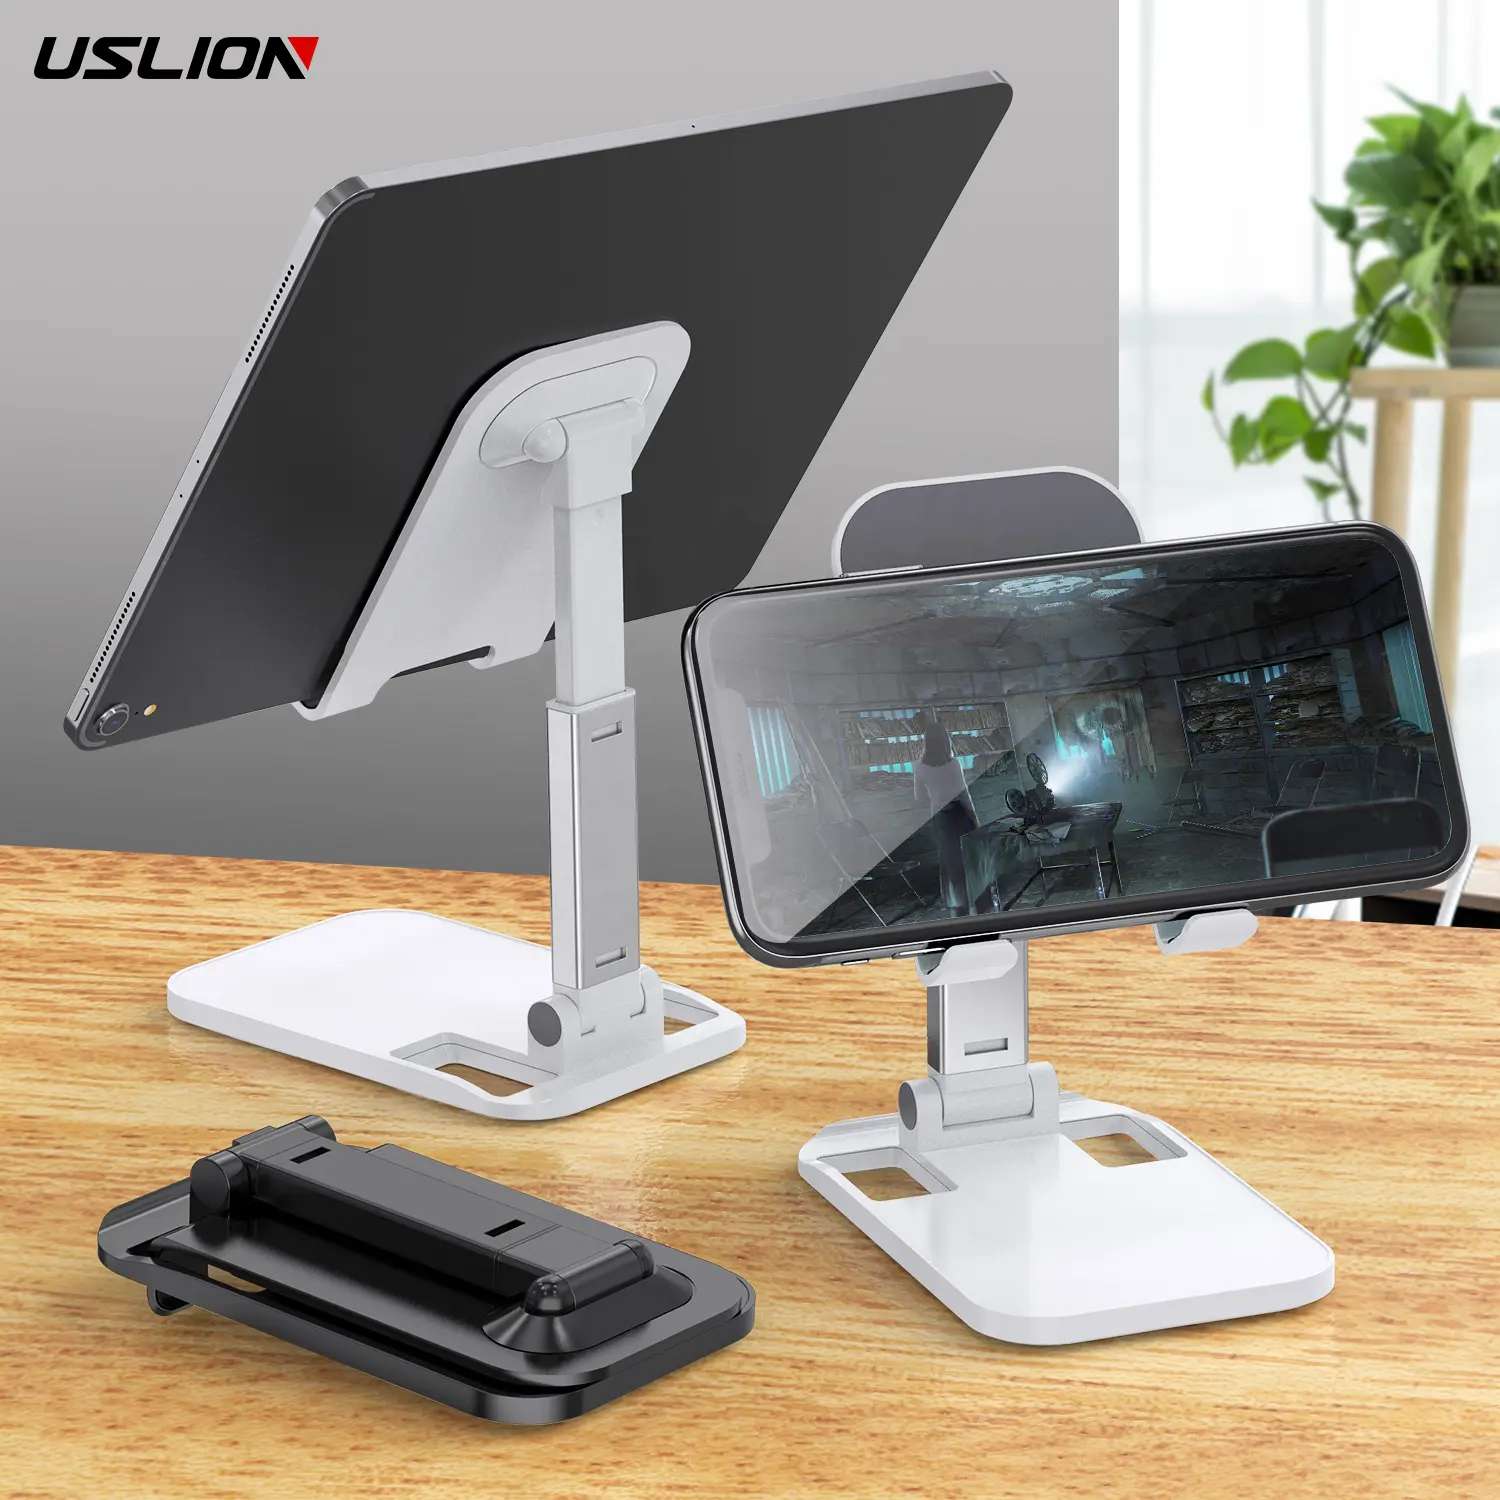 USLION OEM LOGO Portable Folded Adjustable Phone Holder Stand Desktop Universal Aluminum Smartphones Tablet Support